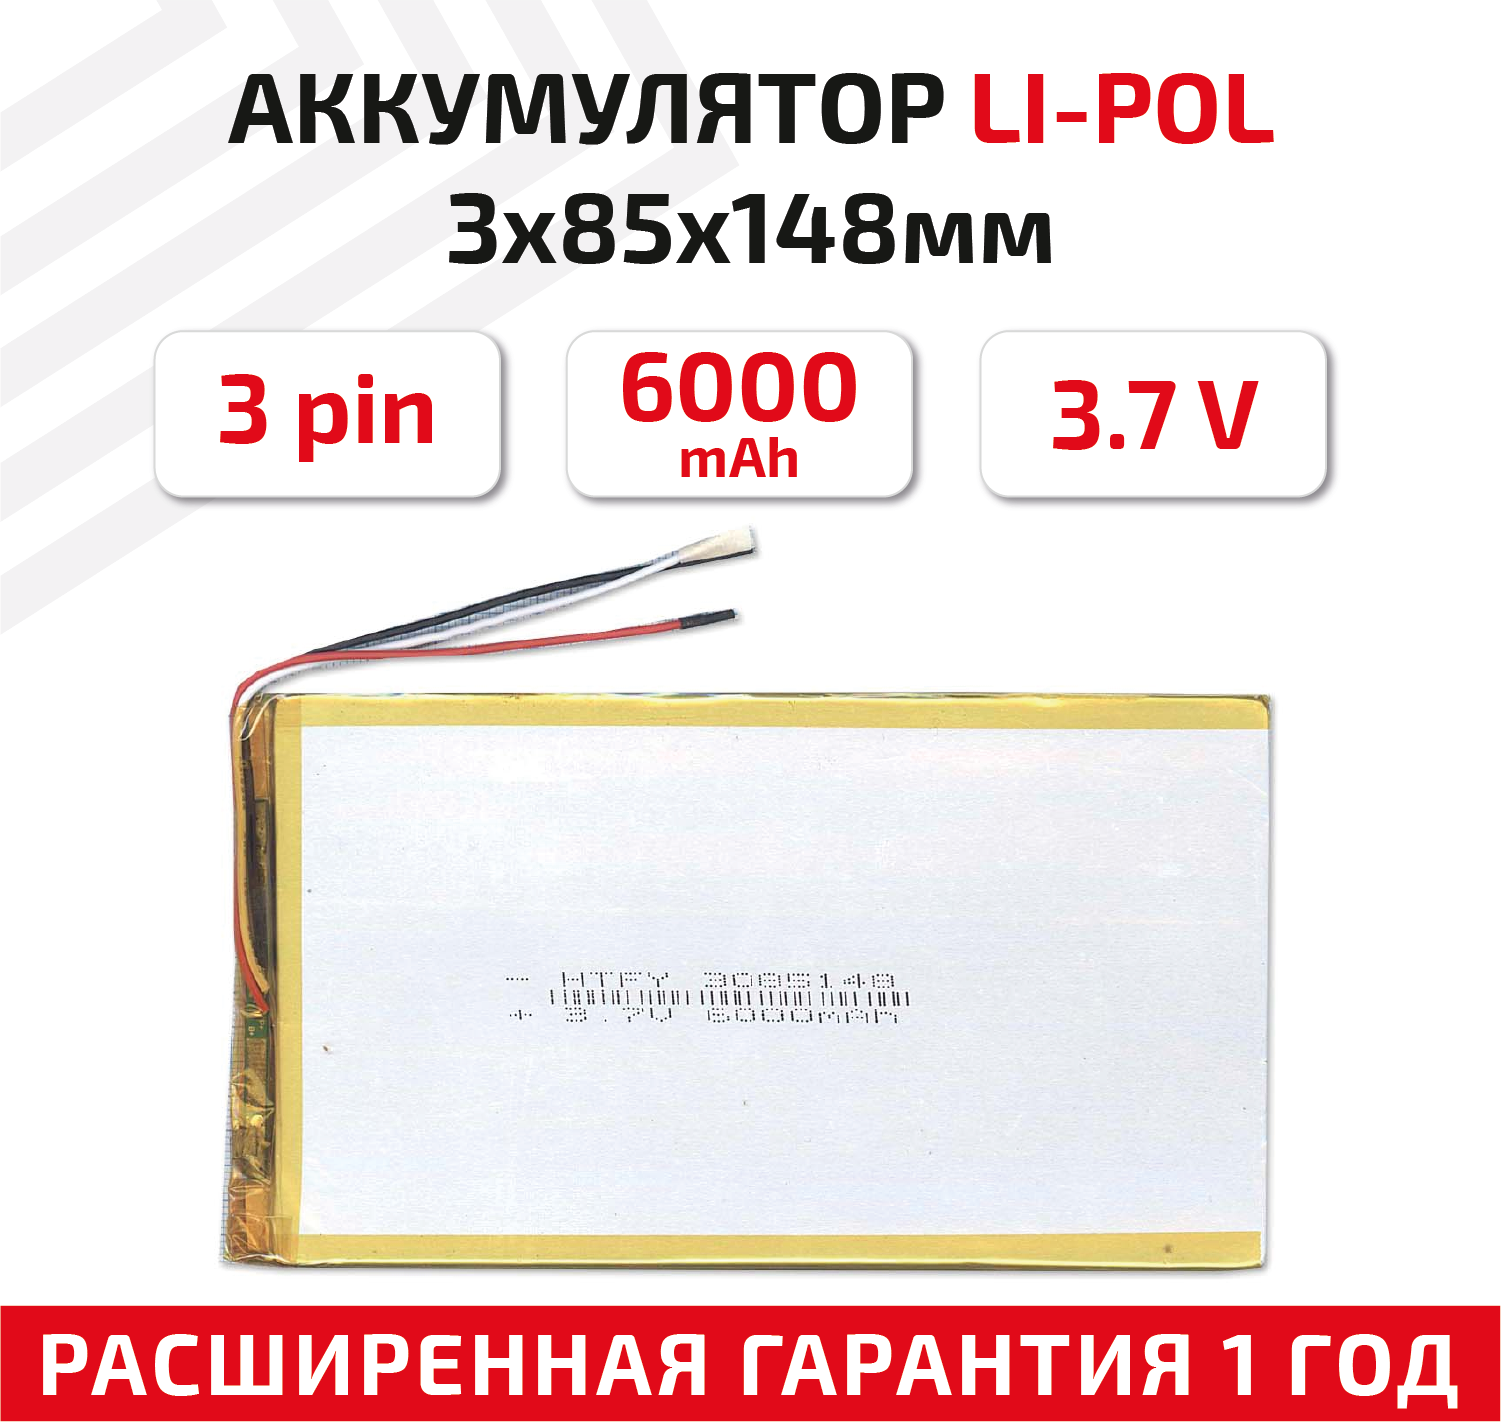 Универсальный аккумулятор (АКБ) для планшета видеорегистратора и др 3х85х148мм 6000мАч 3.7В Li-Pol 3pin (на 3 провода)